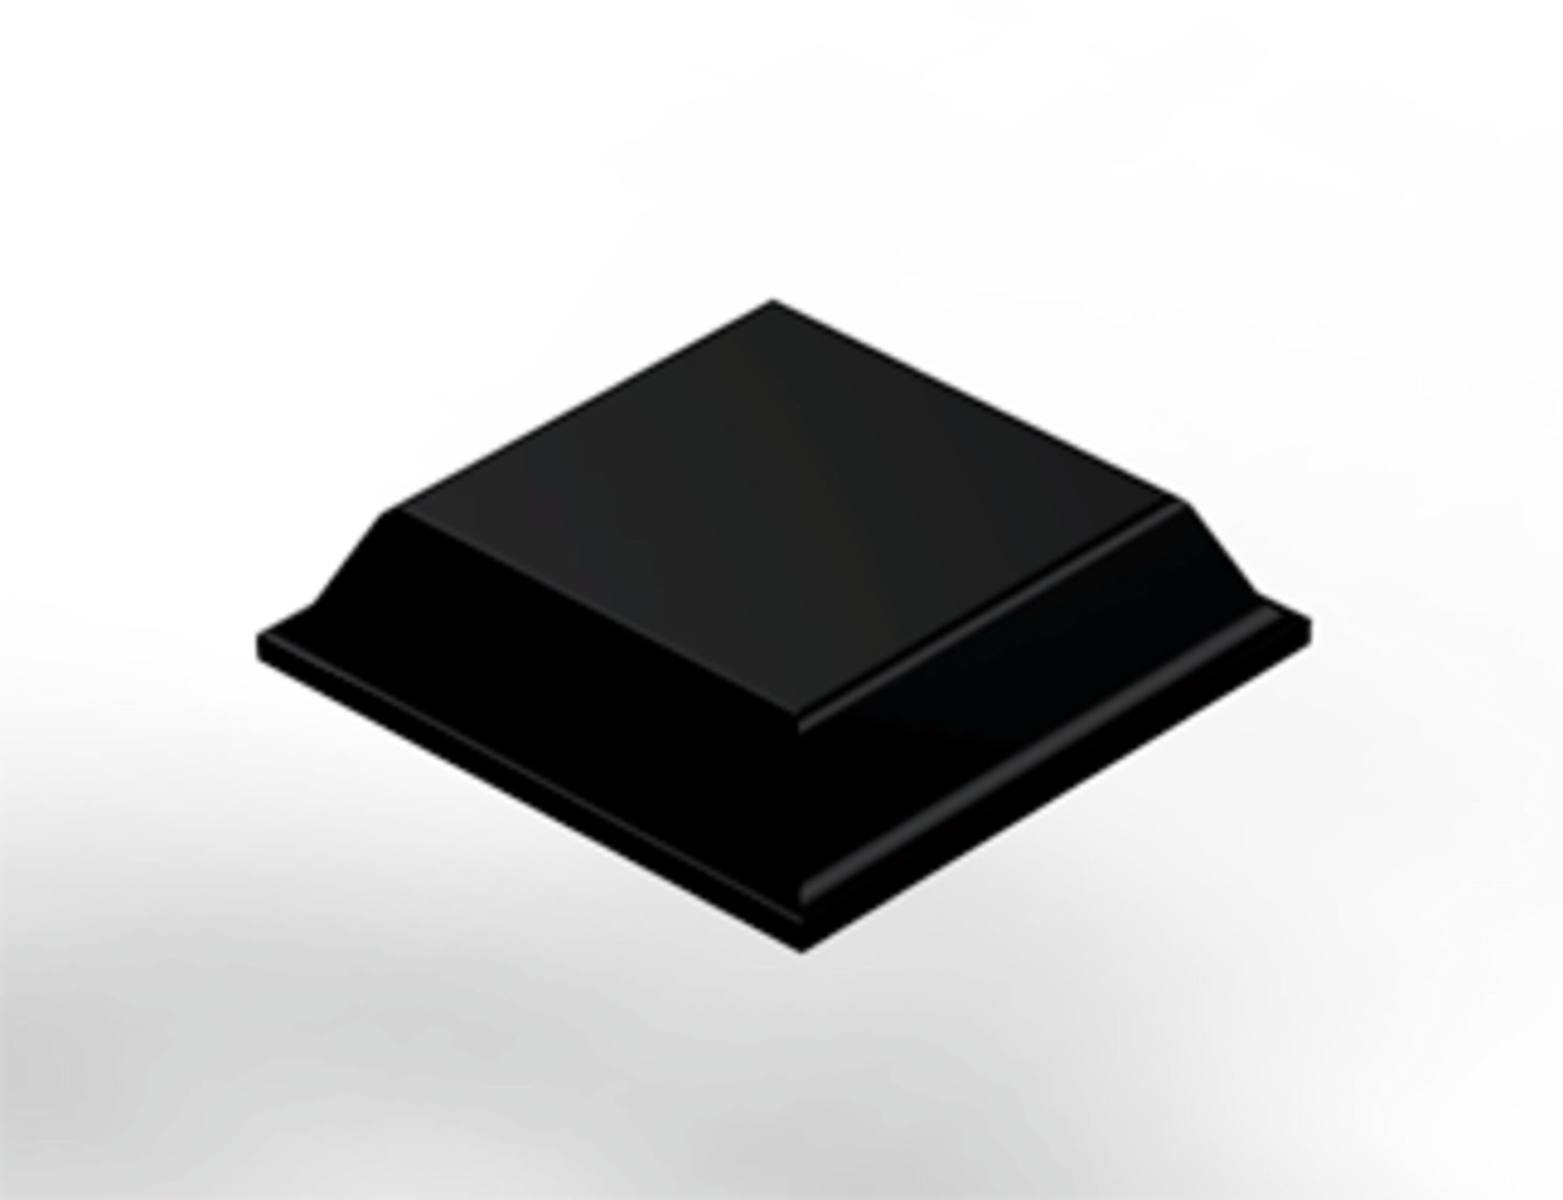 3M Bumpon SJ5008 black / width: 12.7mm height: 3.1mm